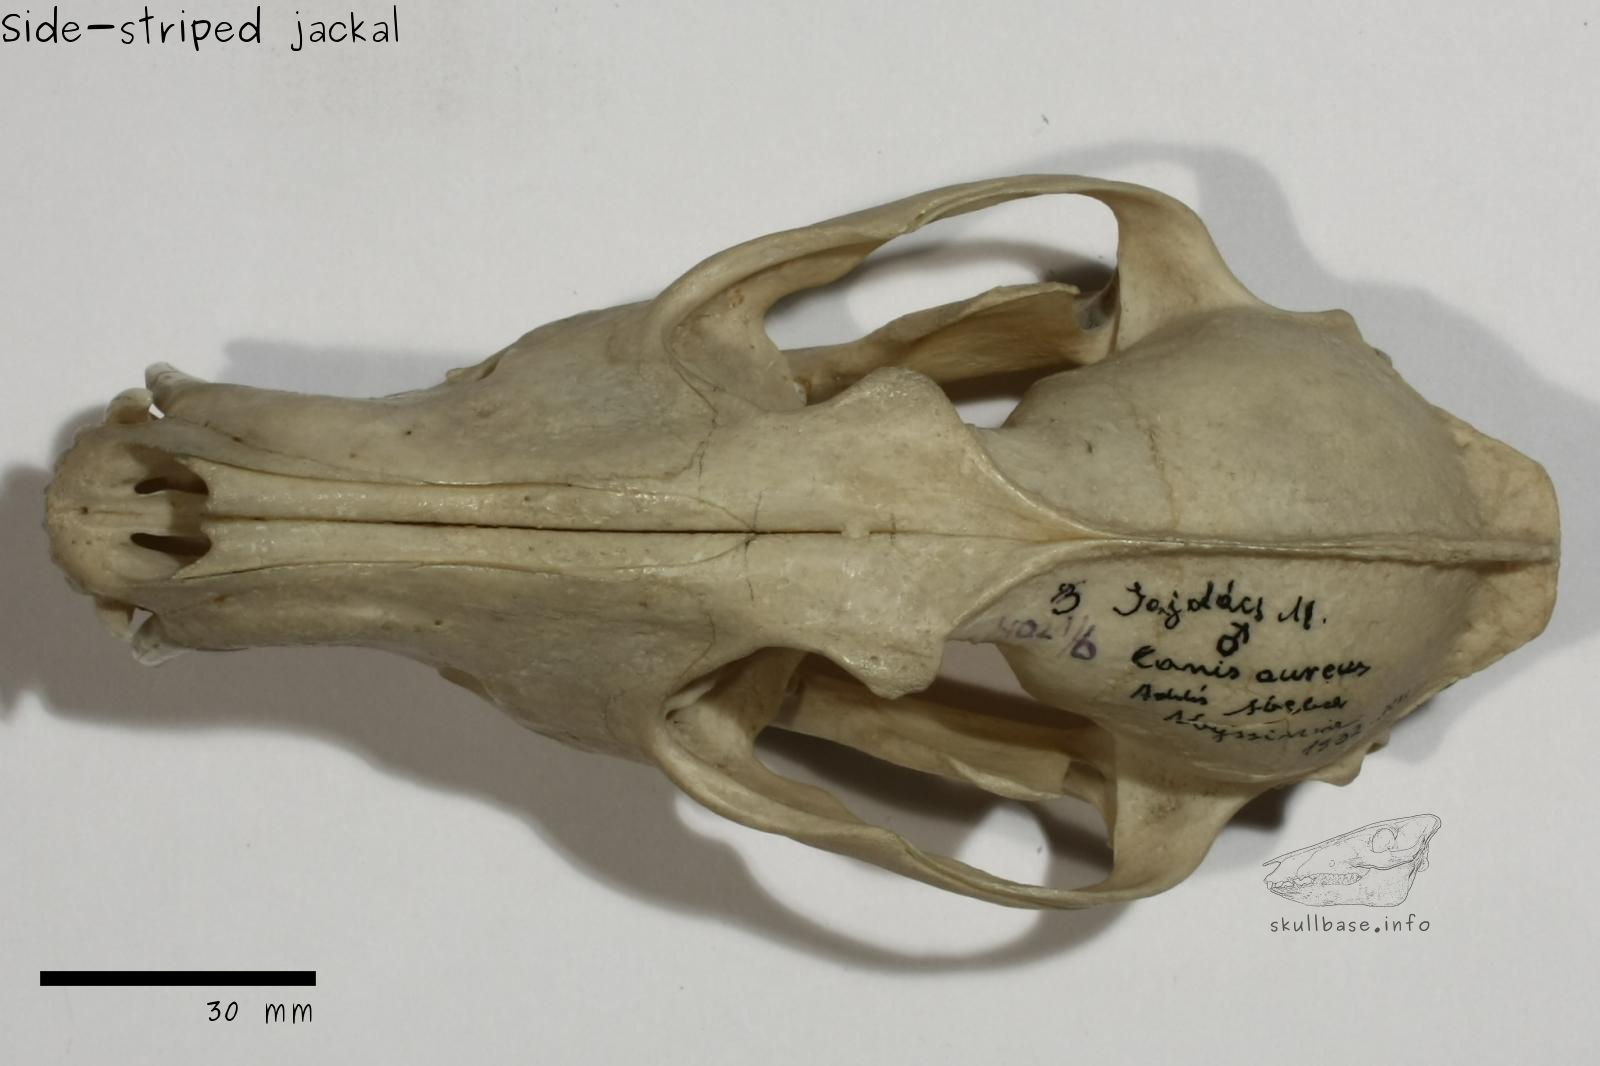 Side-striped jackal (Canis adustus) skull dorsal view